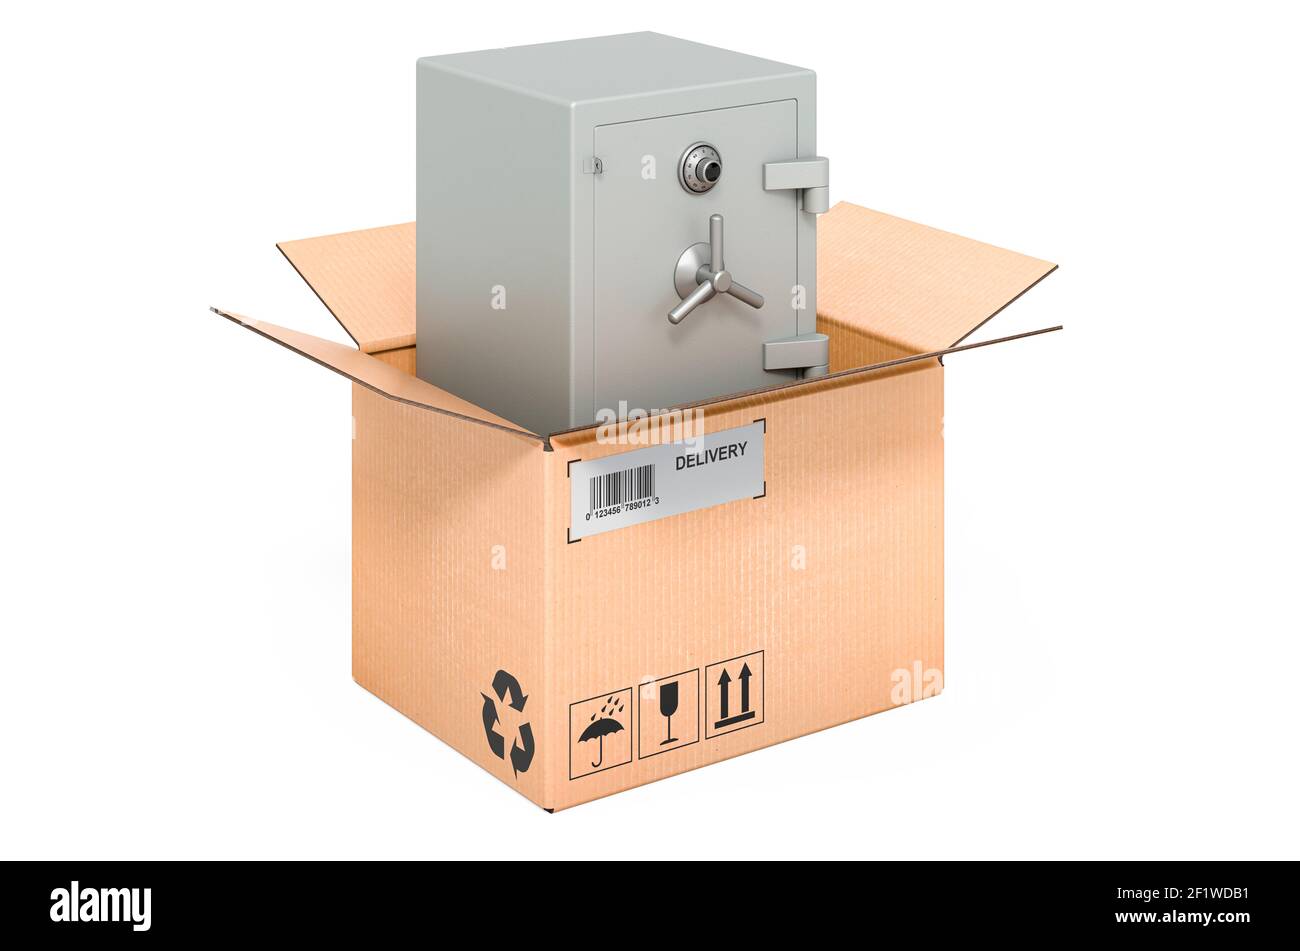 Boîte coffre-fort combinée à l'intérieur de la boîte en carton, concept de livraison. Rendu 3D isolé sur fond blanc Banque D'Images